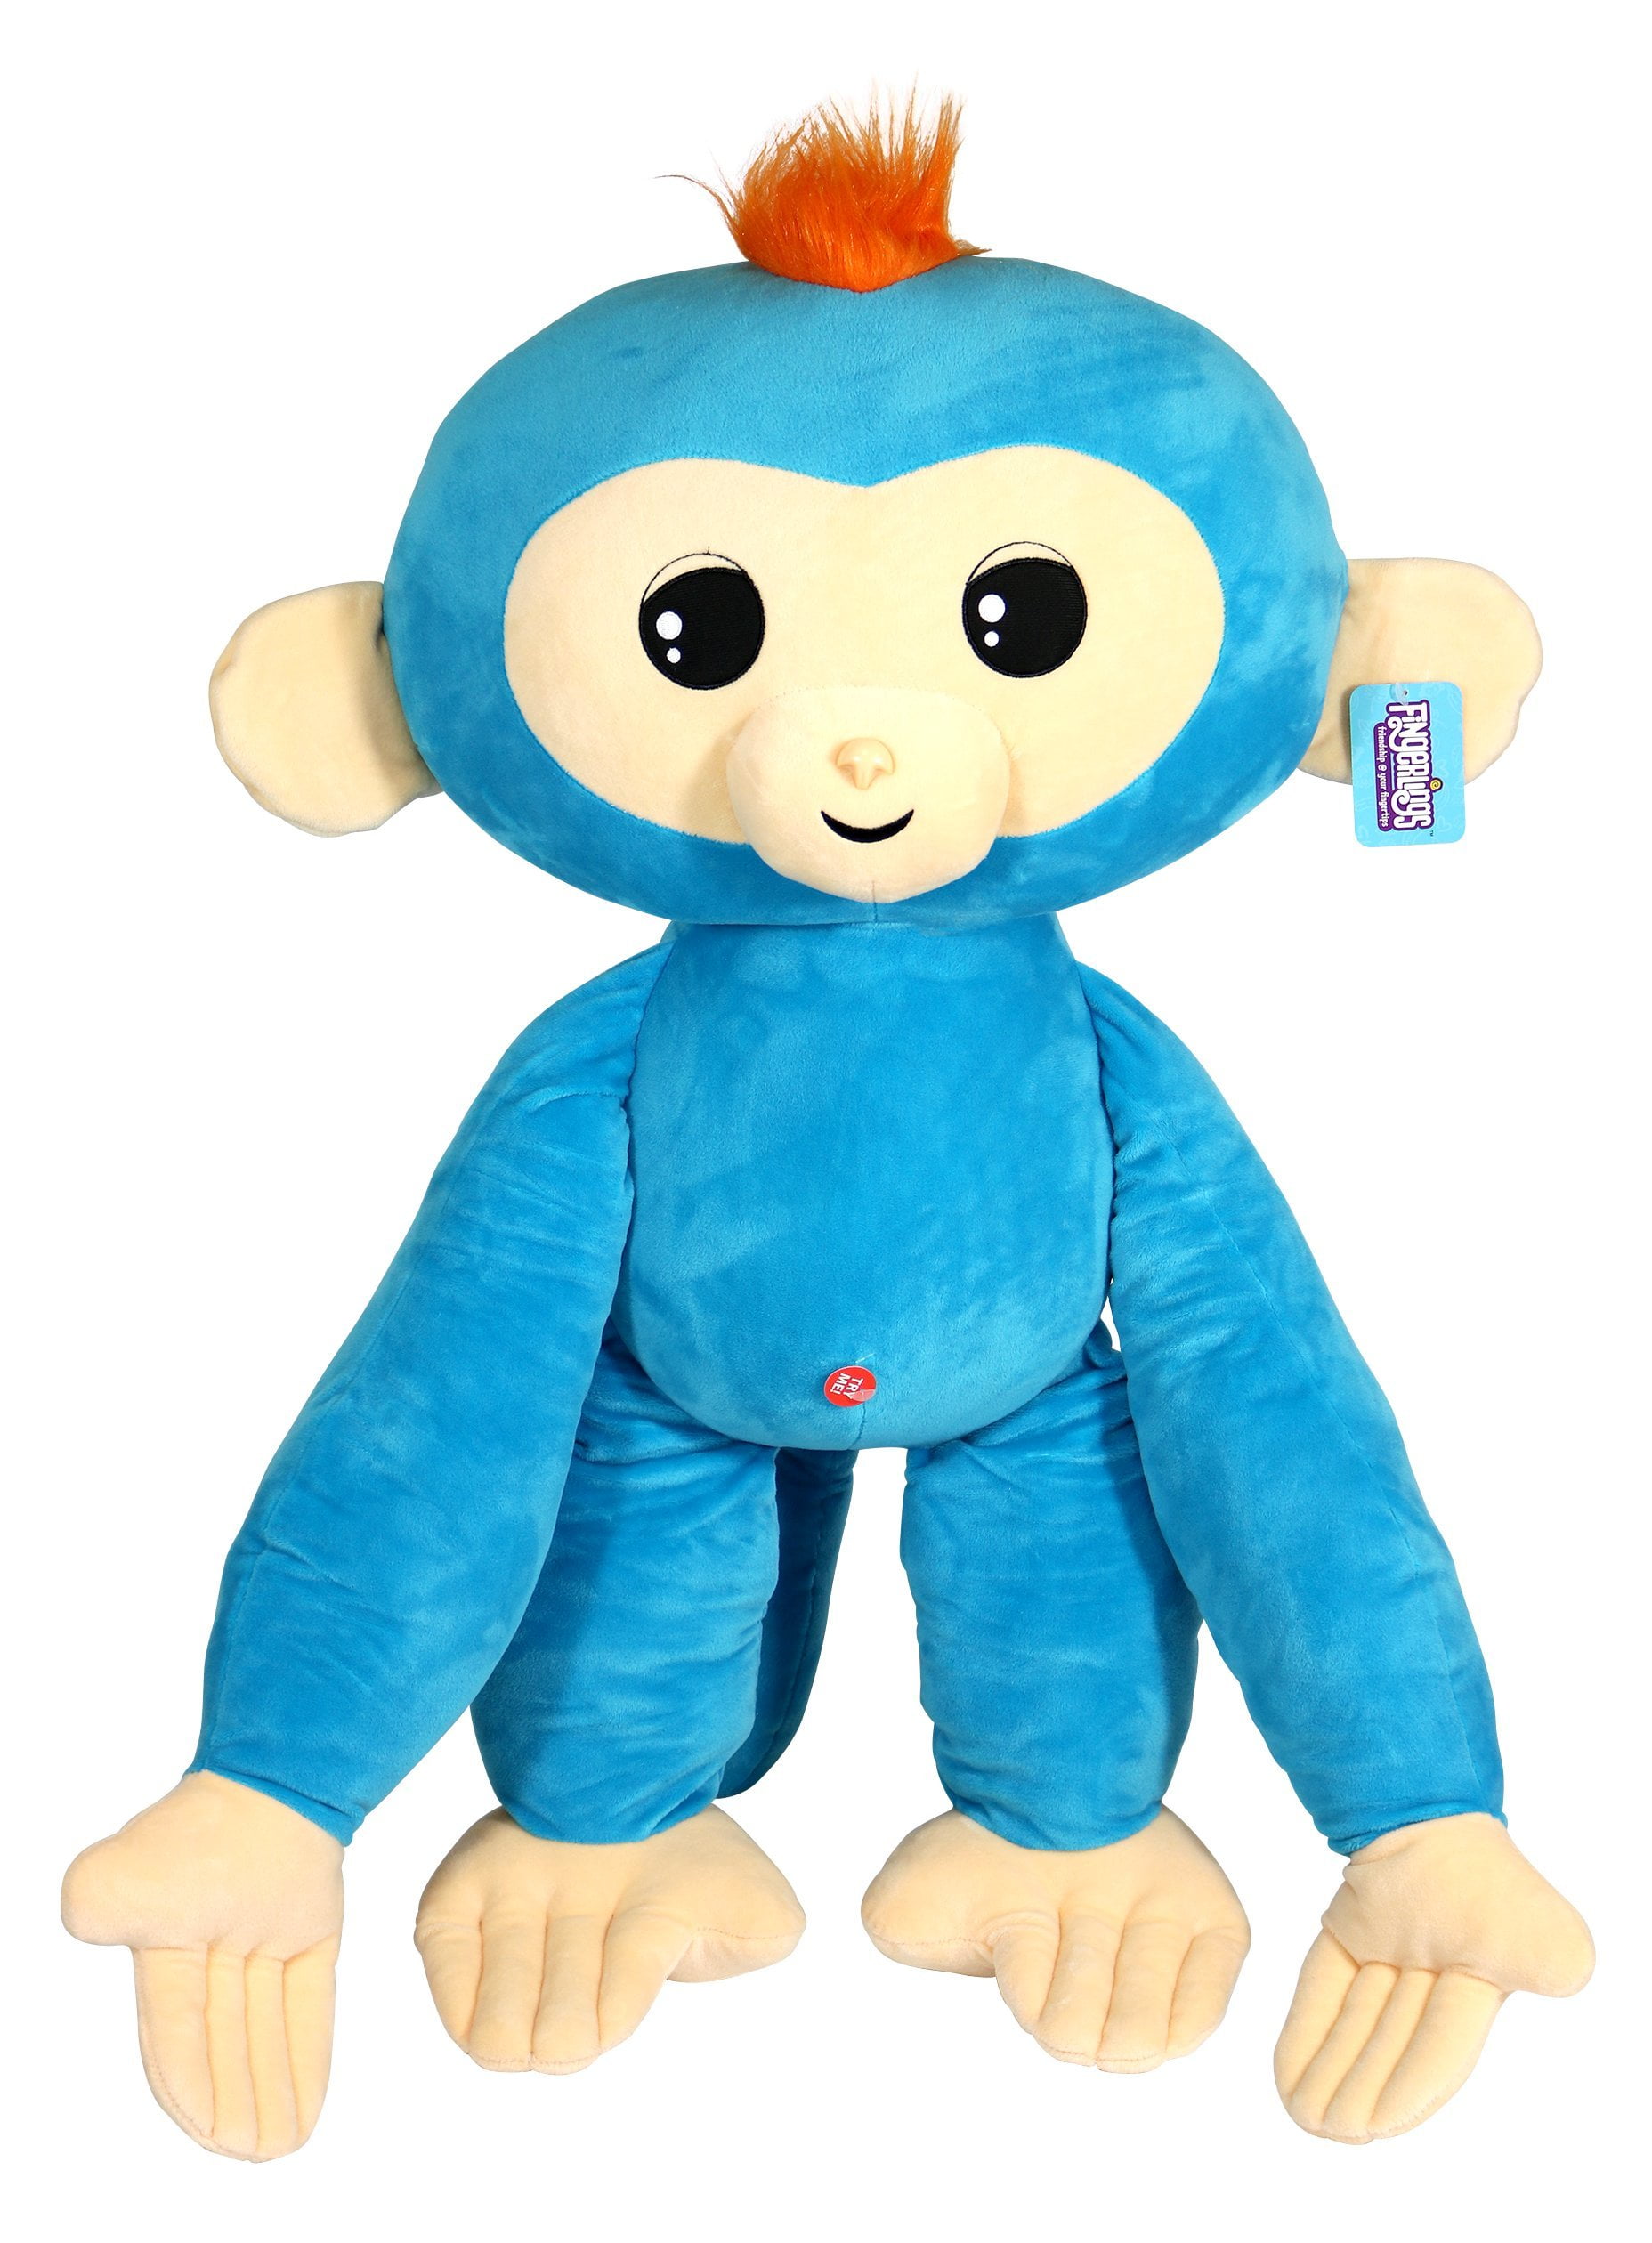 3703 WowWee Baby Monkey Boris Fingerling Figure for sale online 